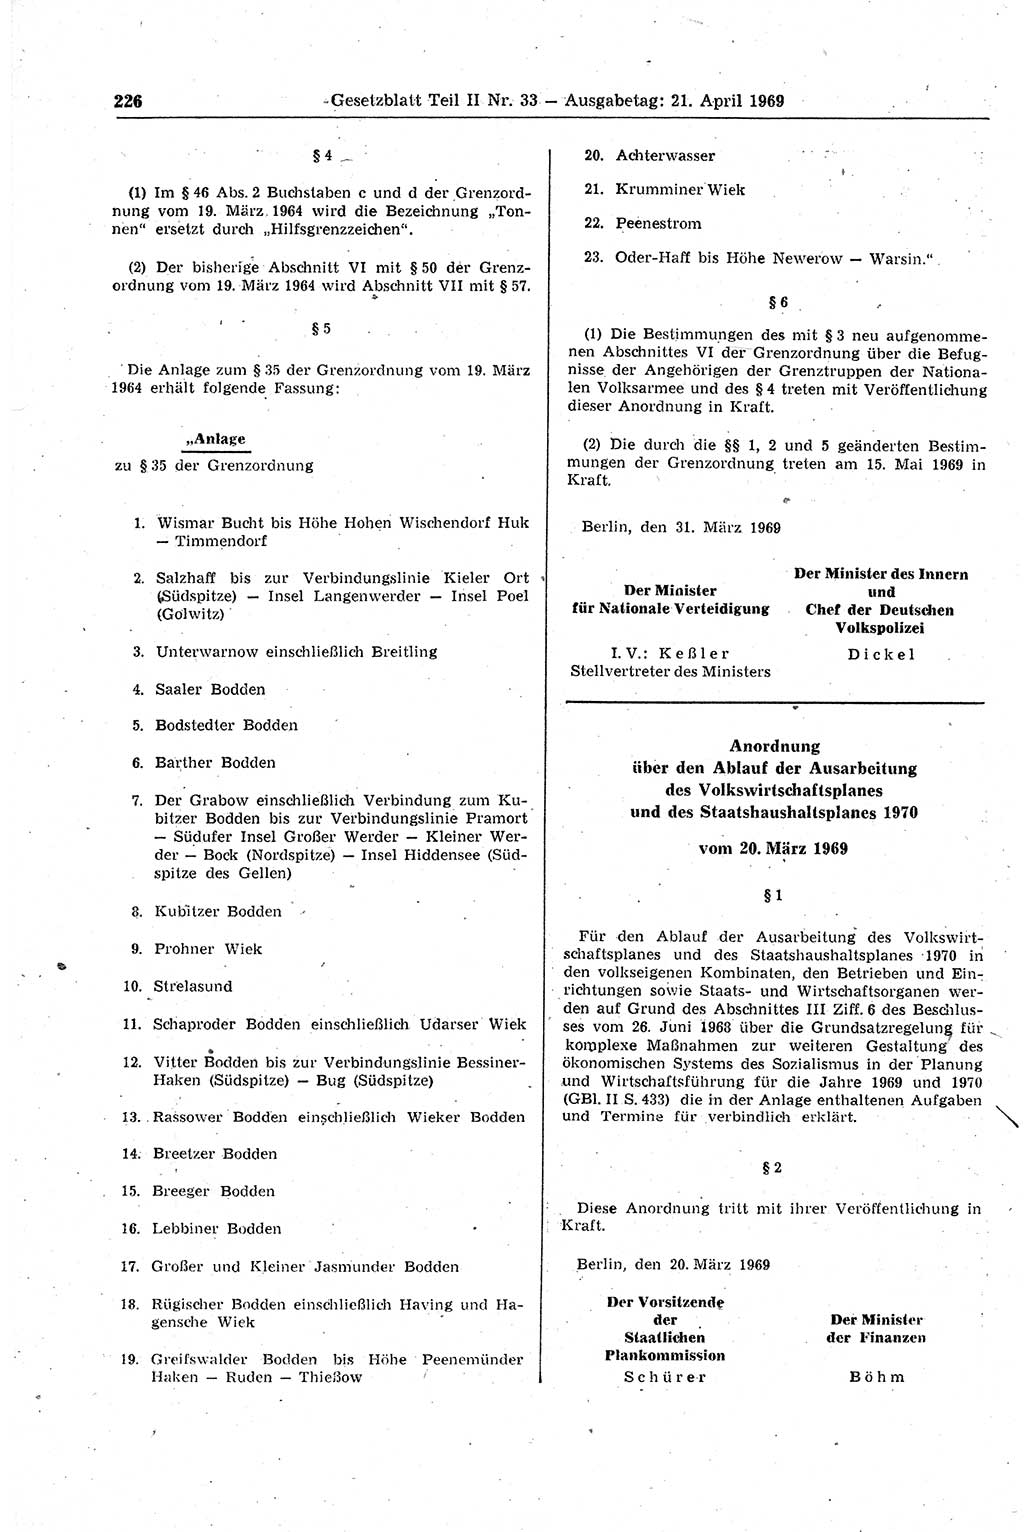 Gesetzblatt (GBl.) der Deutschen Demokratischen Republik (DDR) Teil ⅠⅠ 1969, Seite 226 (GBl. DDR ⅠⅠ 1969, S. 226)